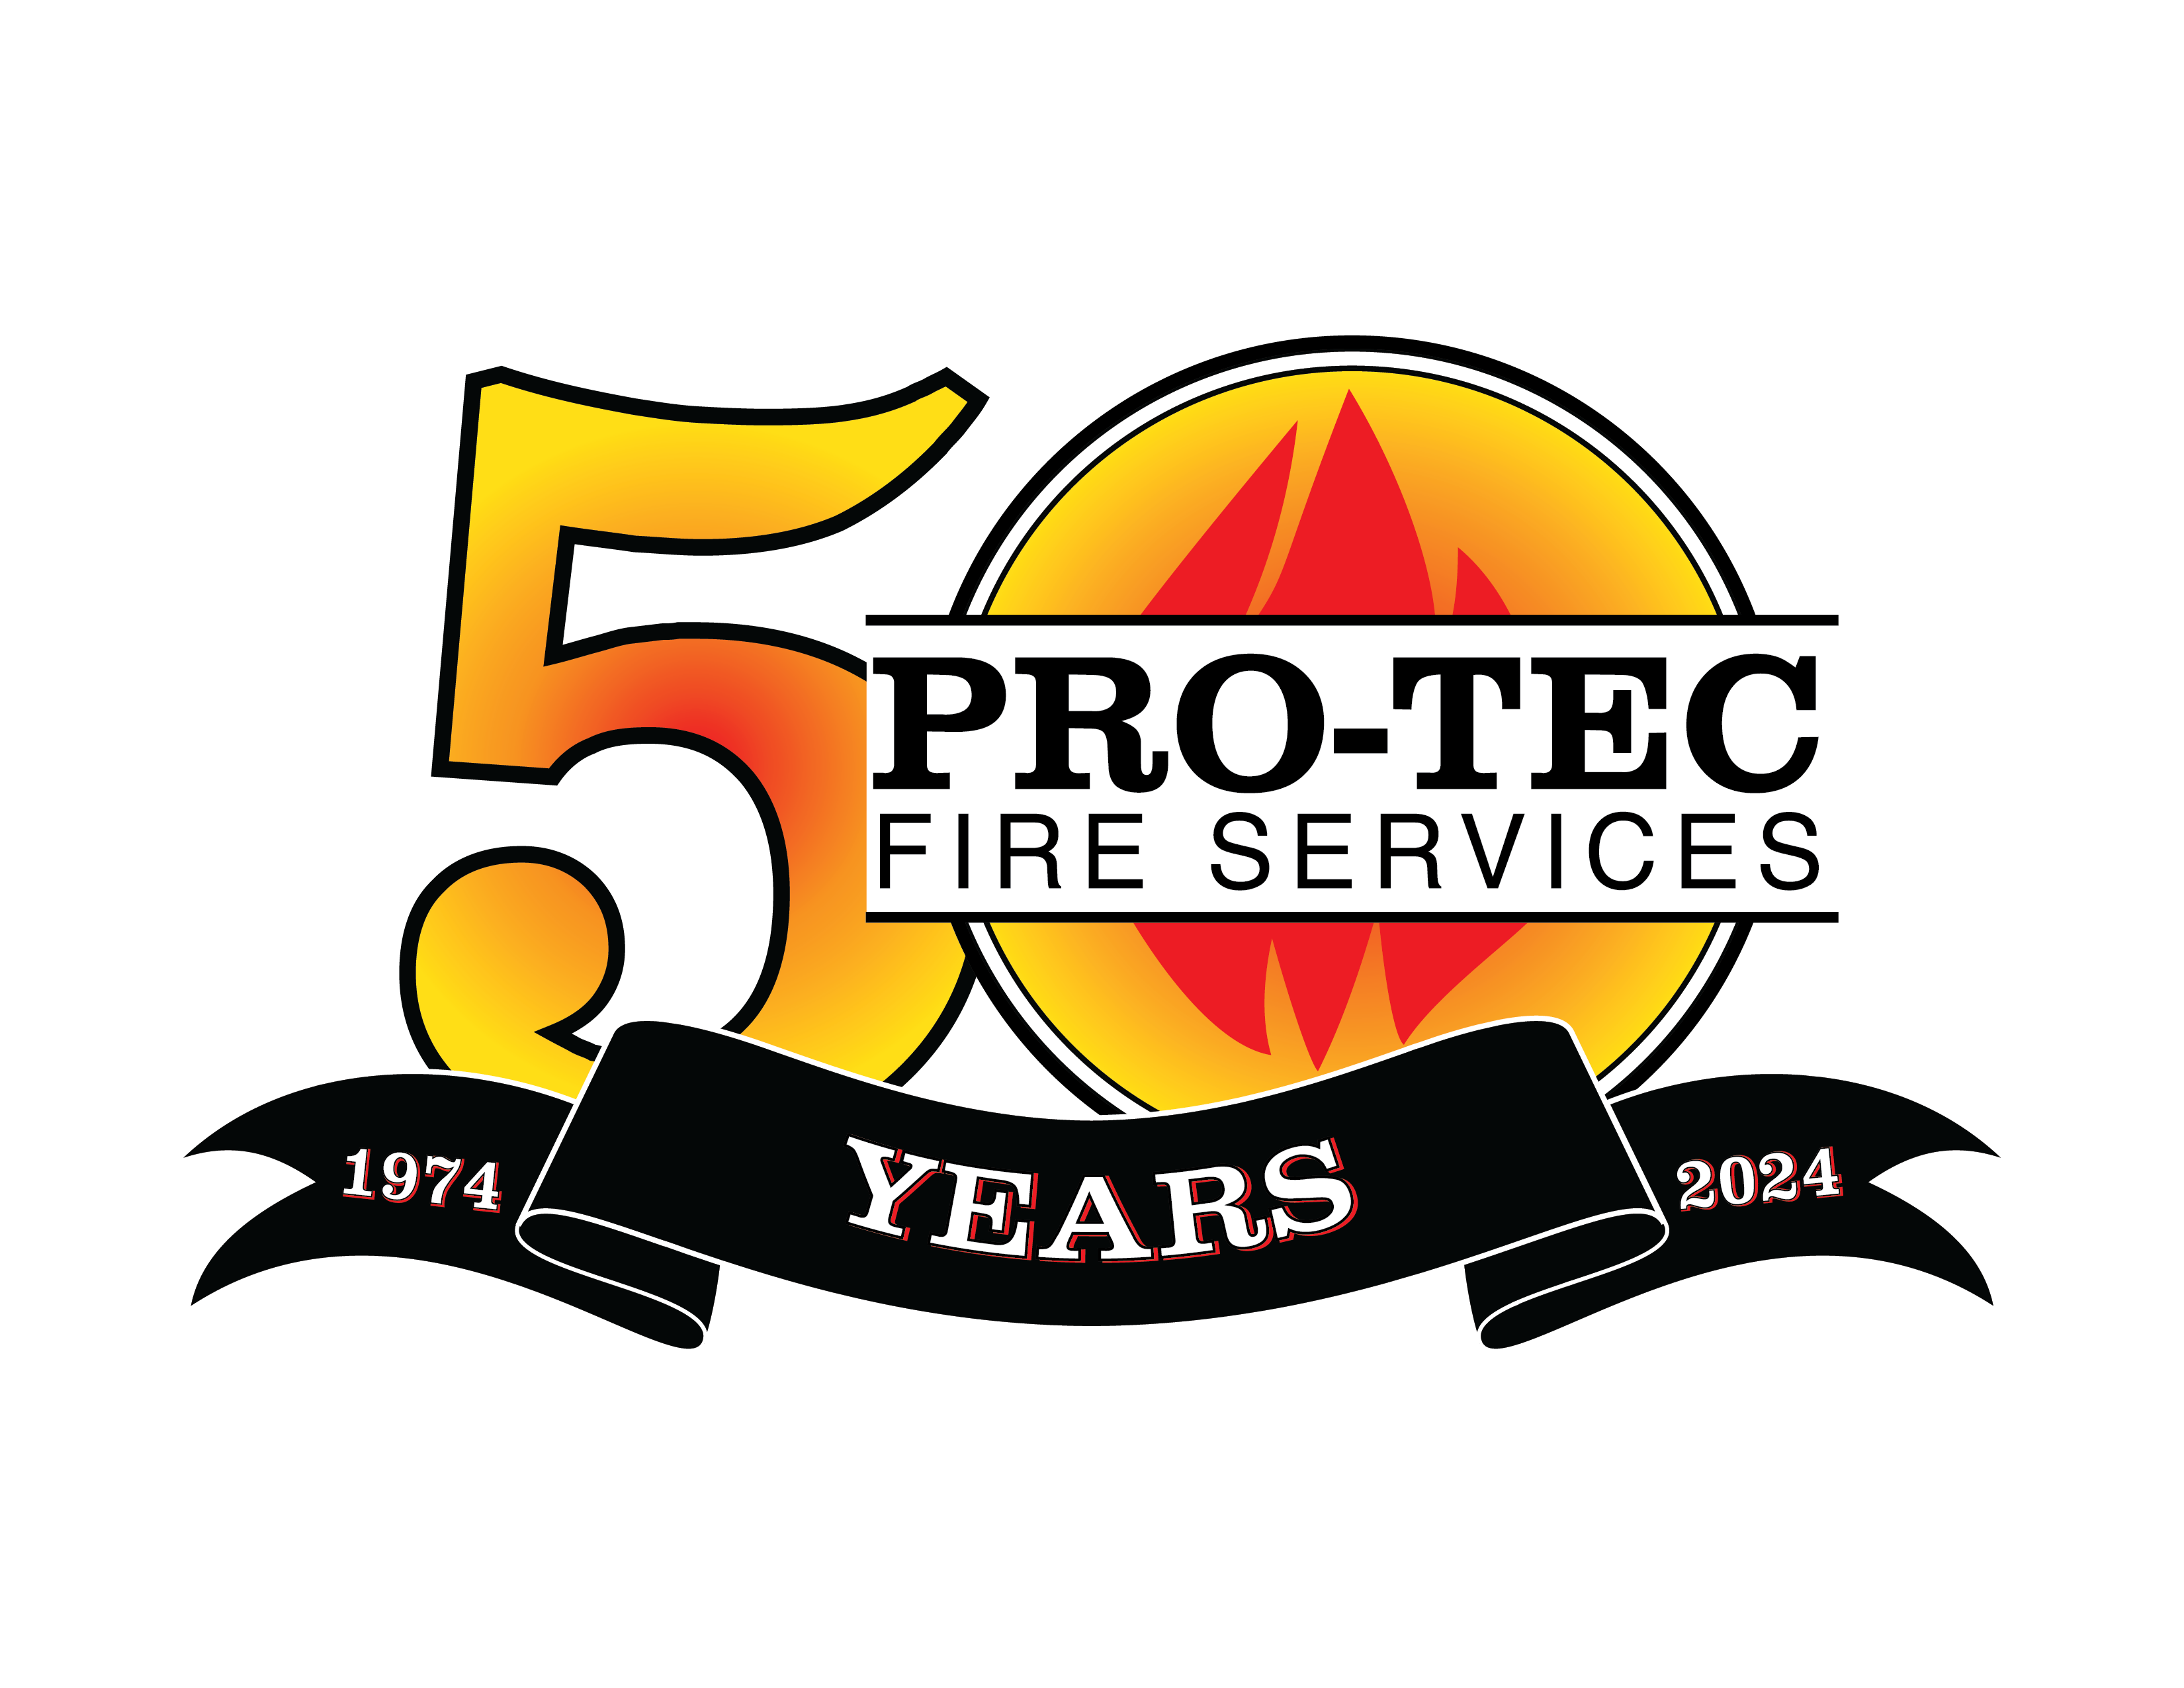 Pro-Tec Fire Services